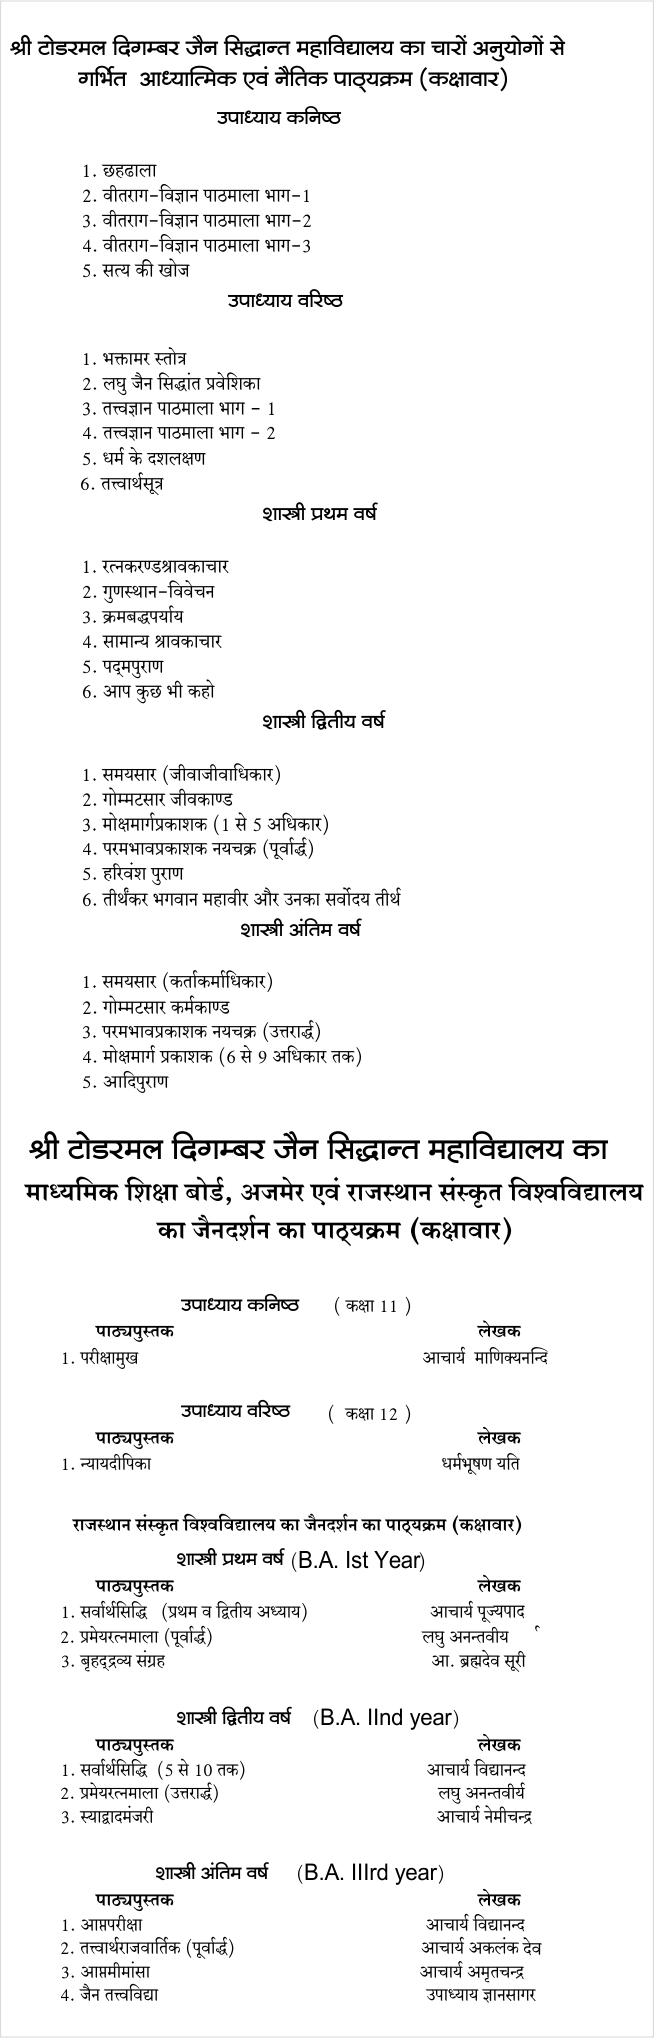 Sidhant-Mahavidyalaya-Syllabus 